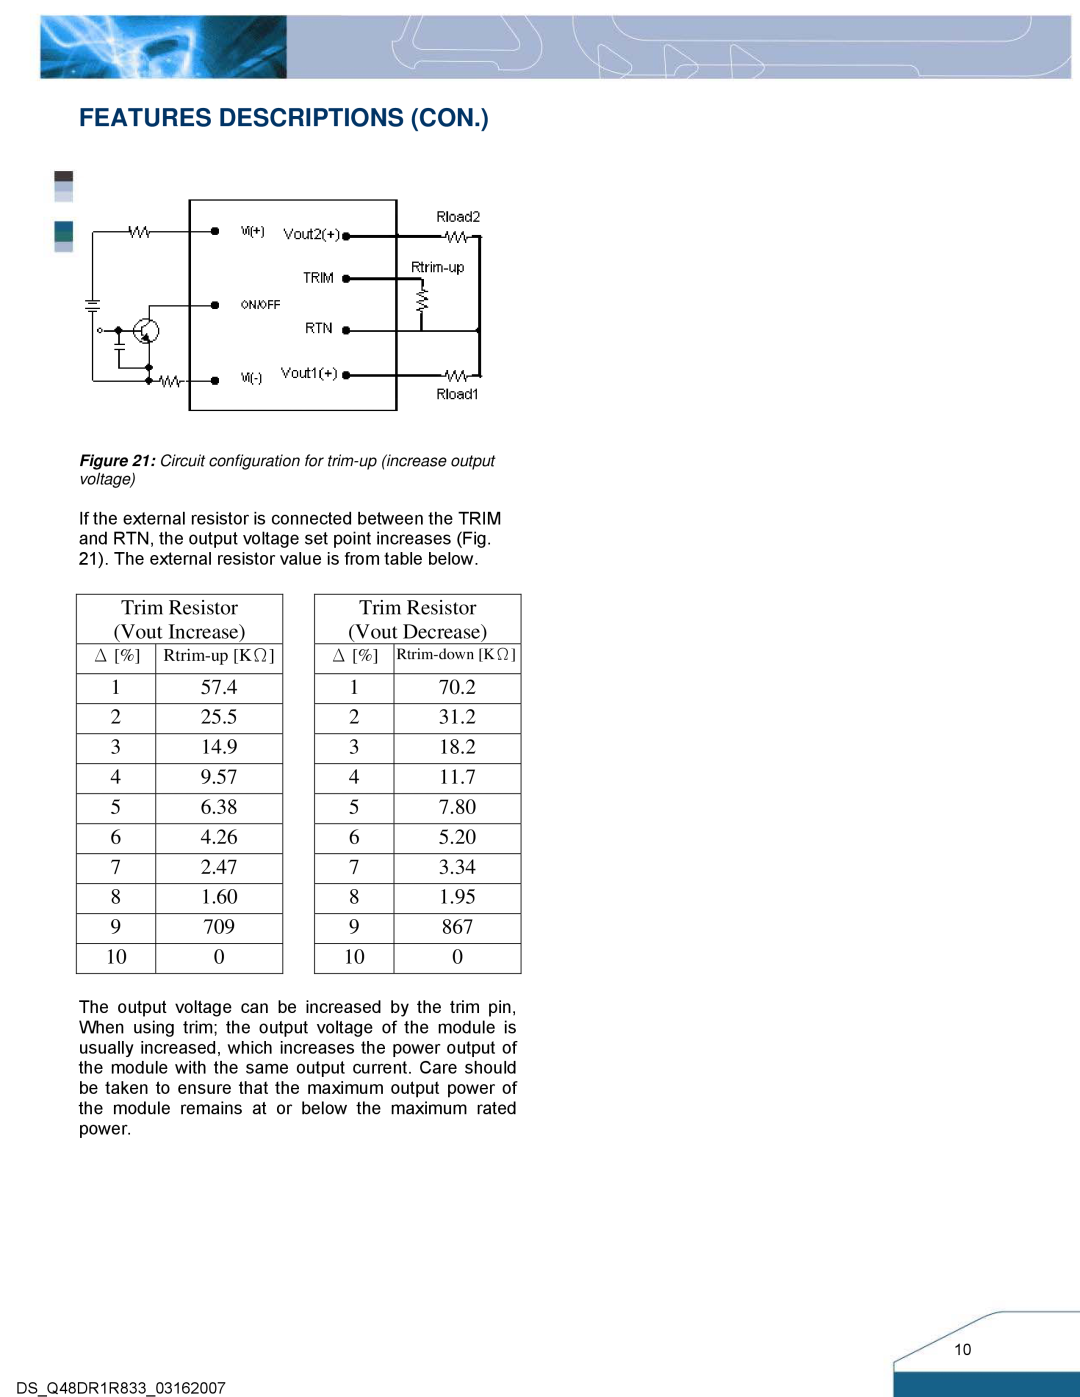 Delta Electronics Series Q48DR manual Features Descriptions Con, Trim Resistor Vout Increase, Trim Resistor Vout Decrease 